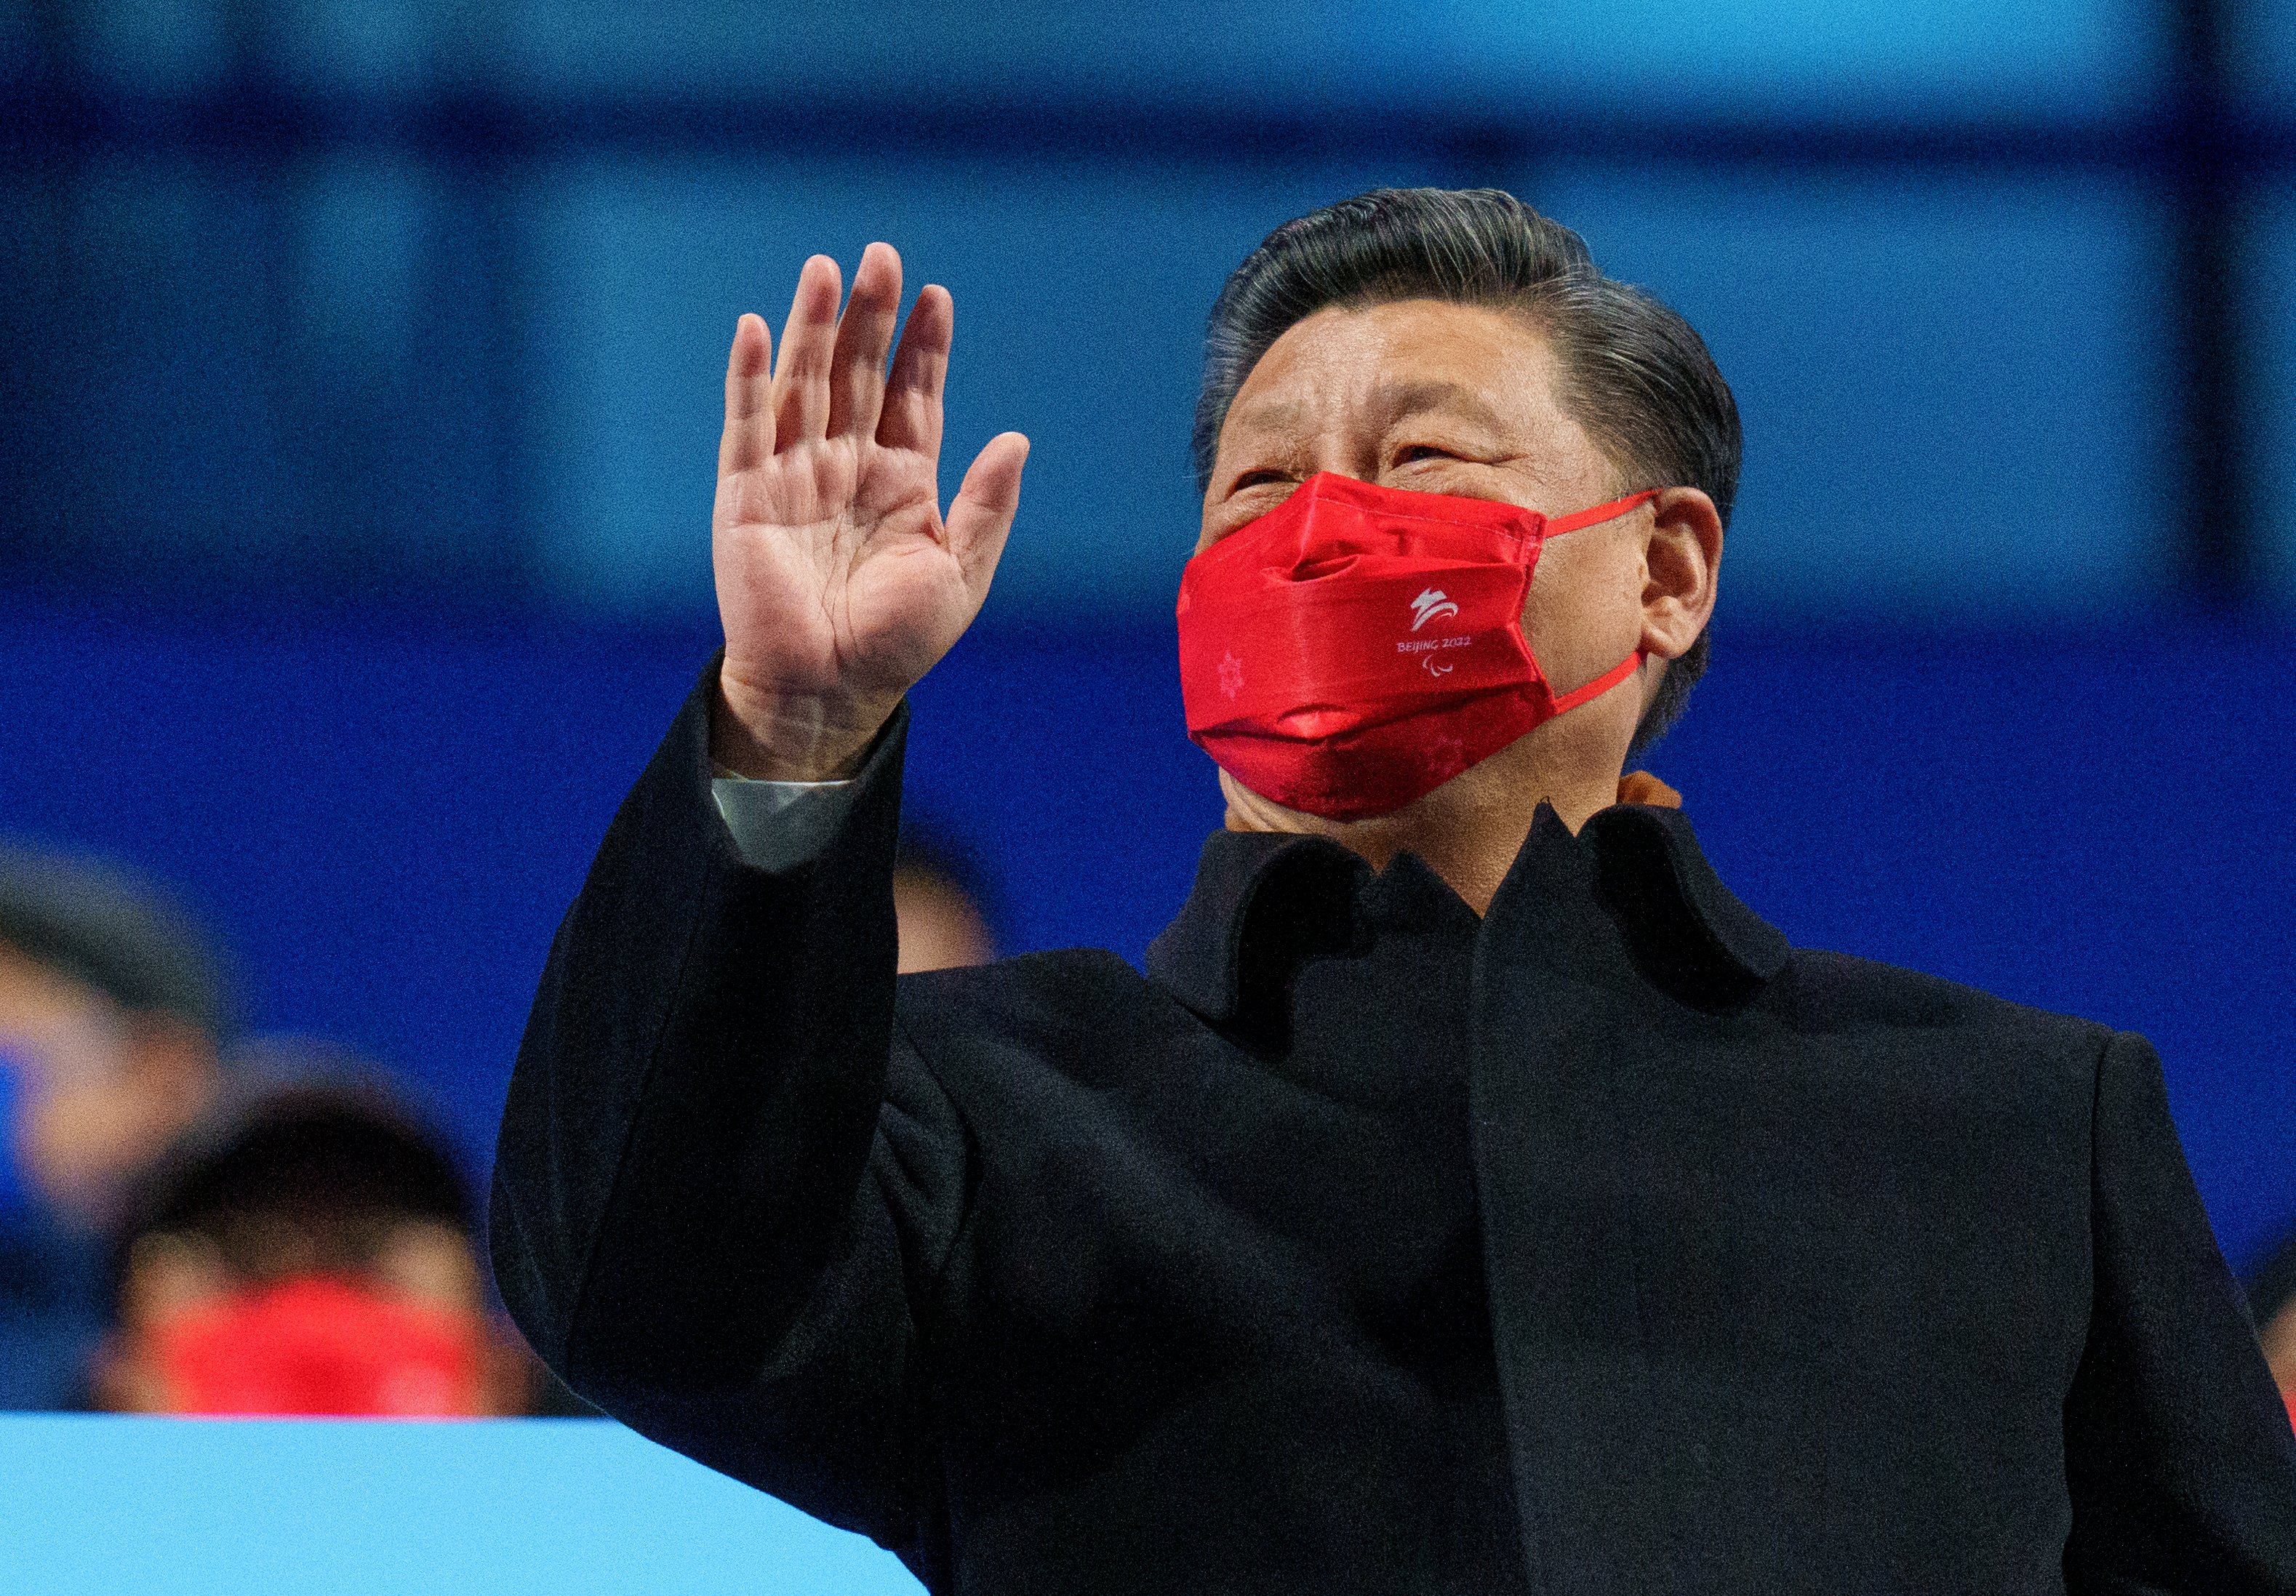 El president xinès demana mà dura contra qui qüestioni els confinaments per covid